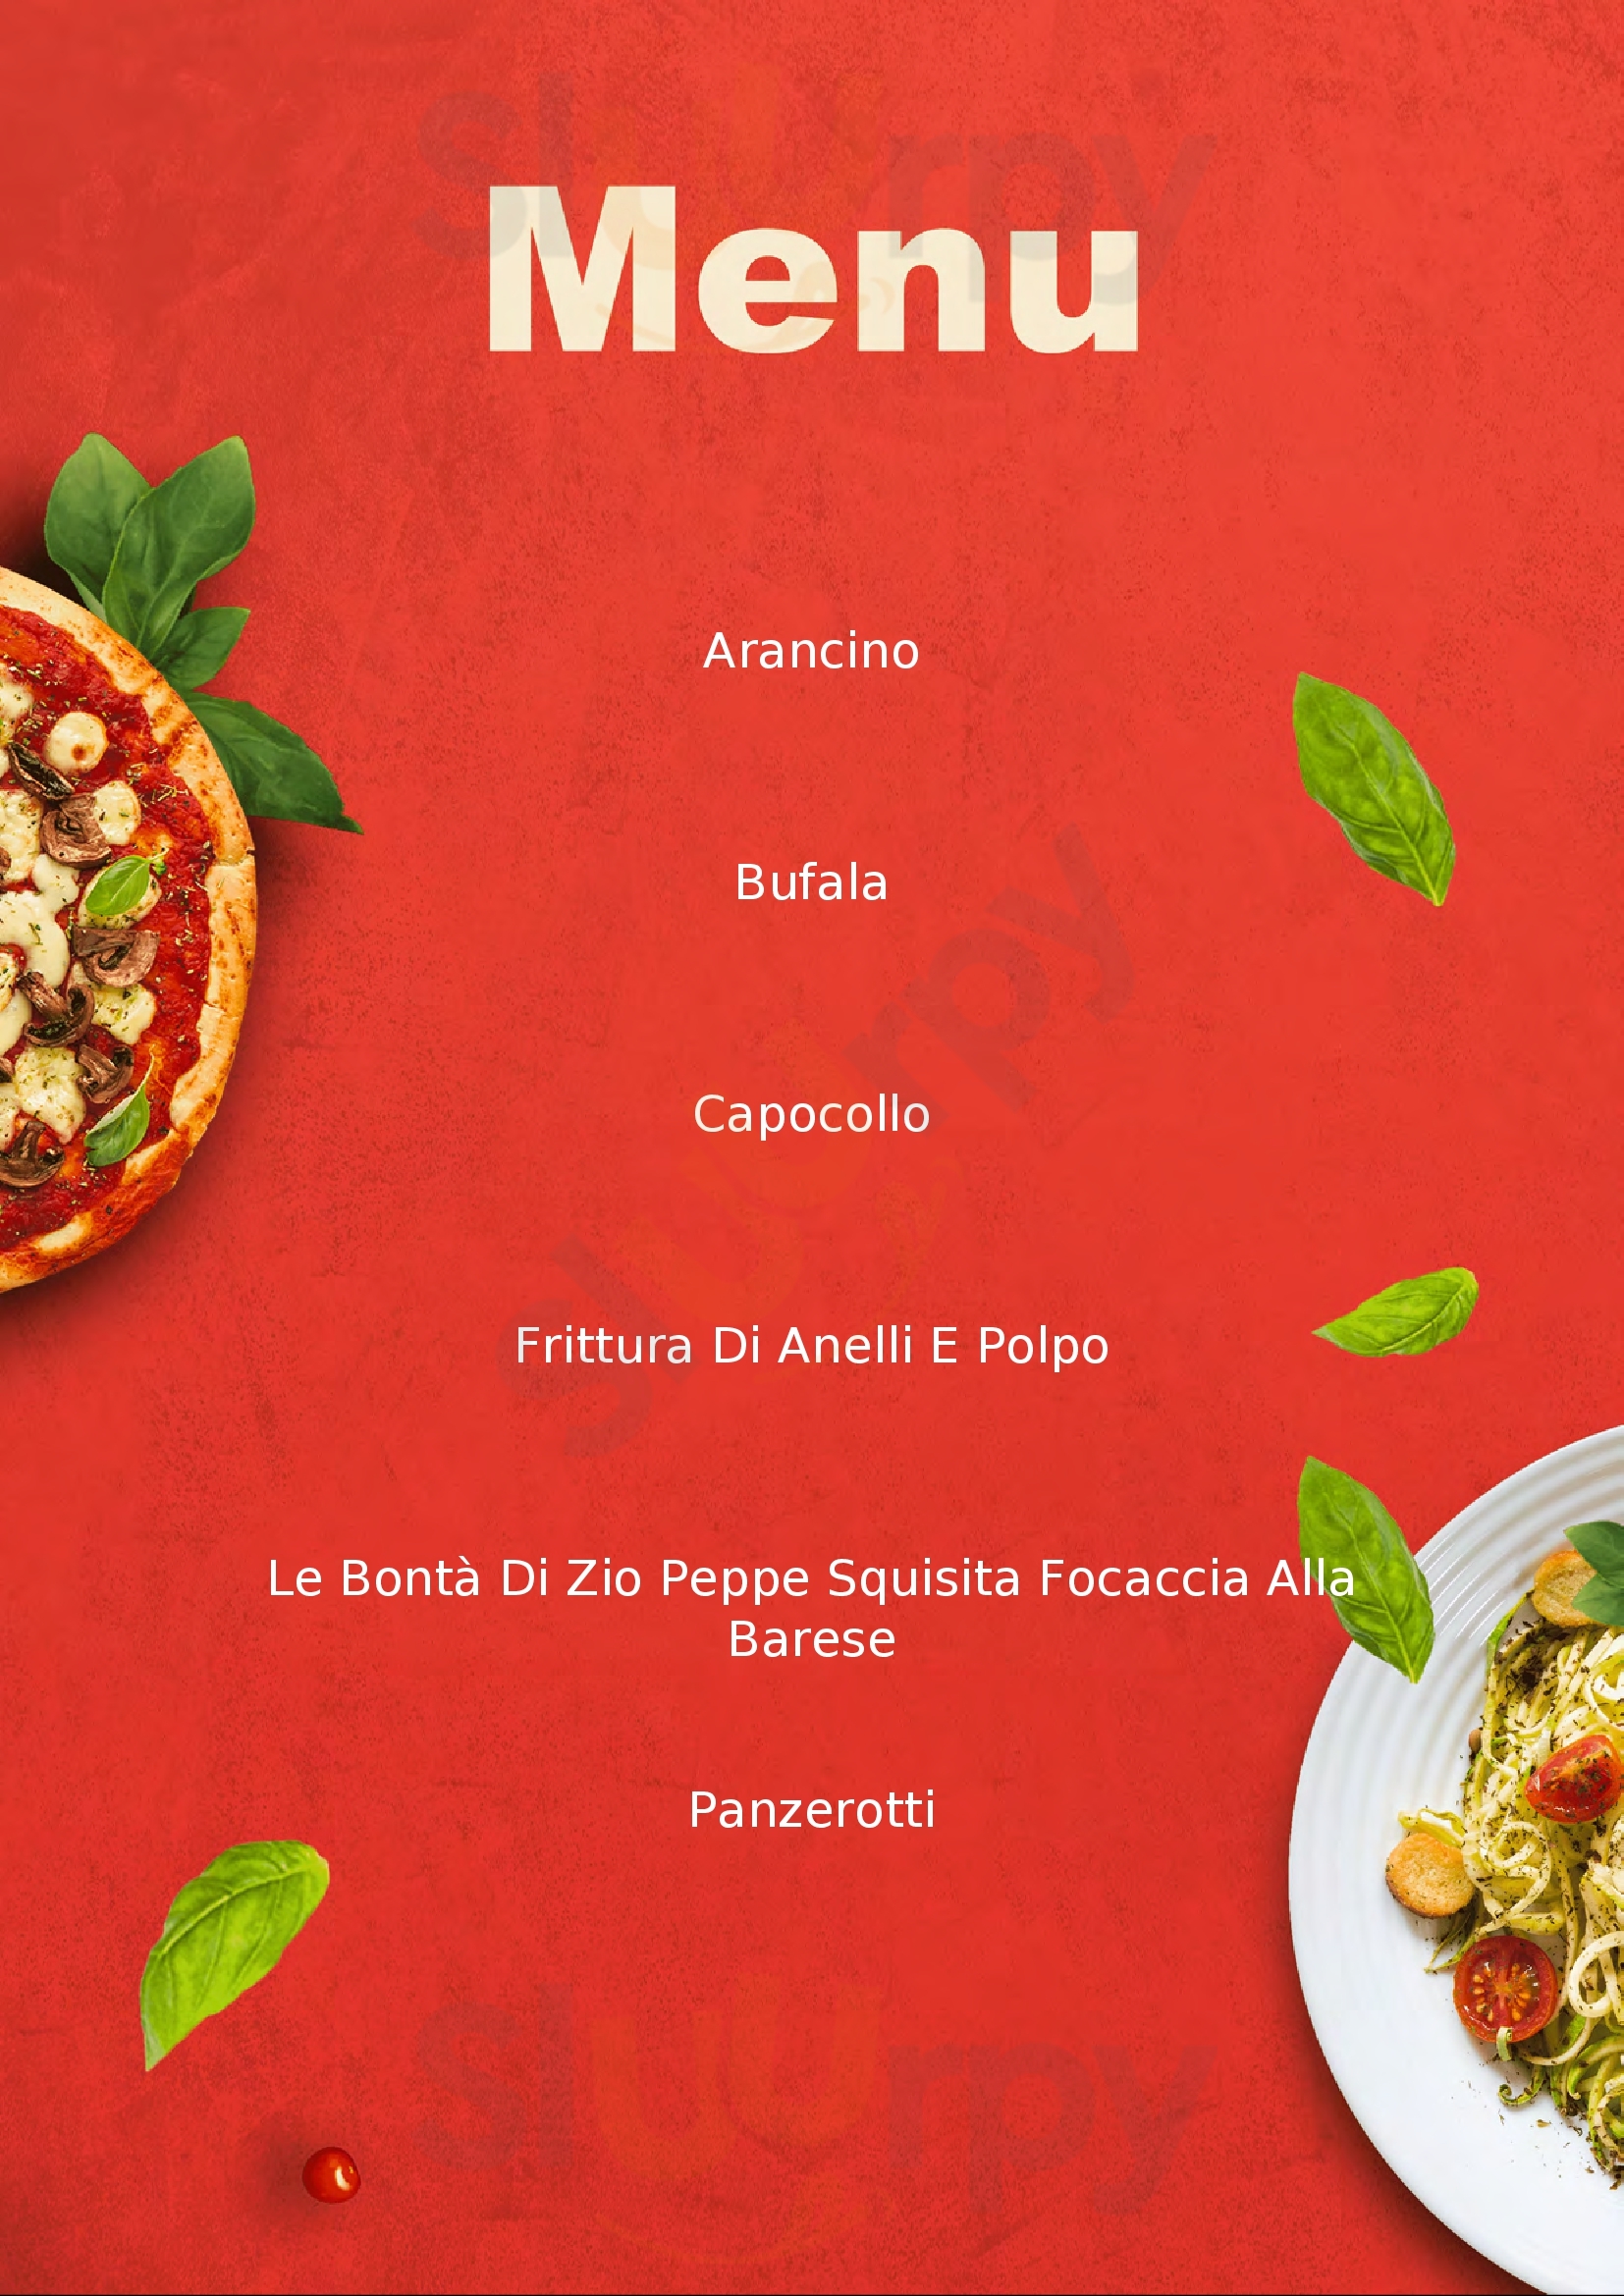 Pizzeria Zio Peppe Bari menù 1 pagina